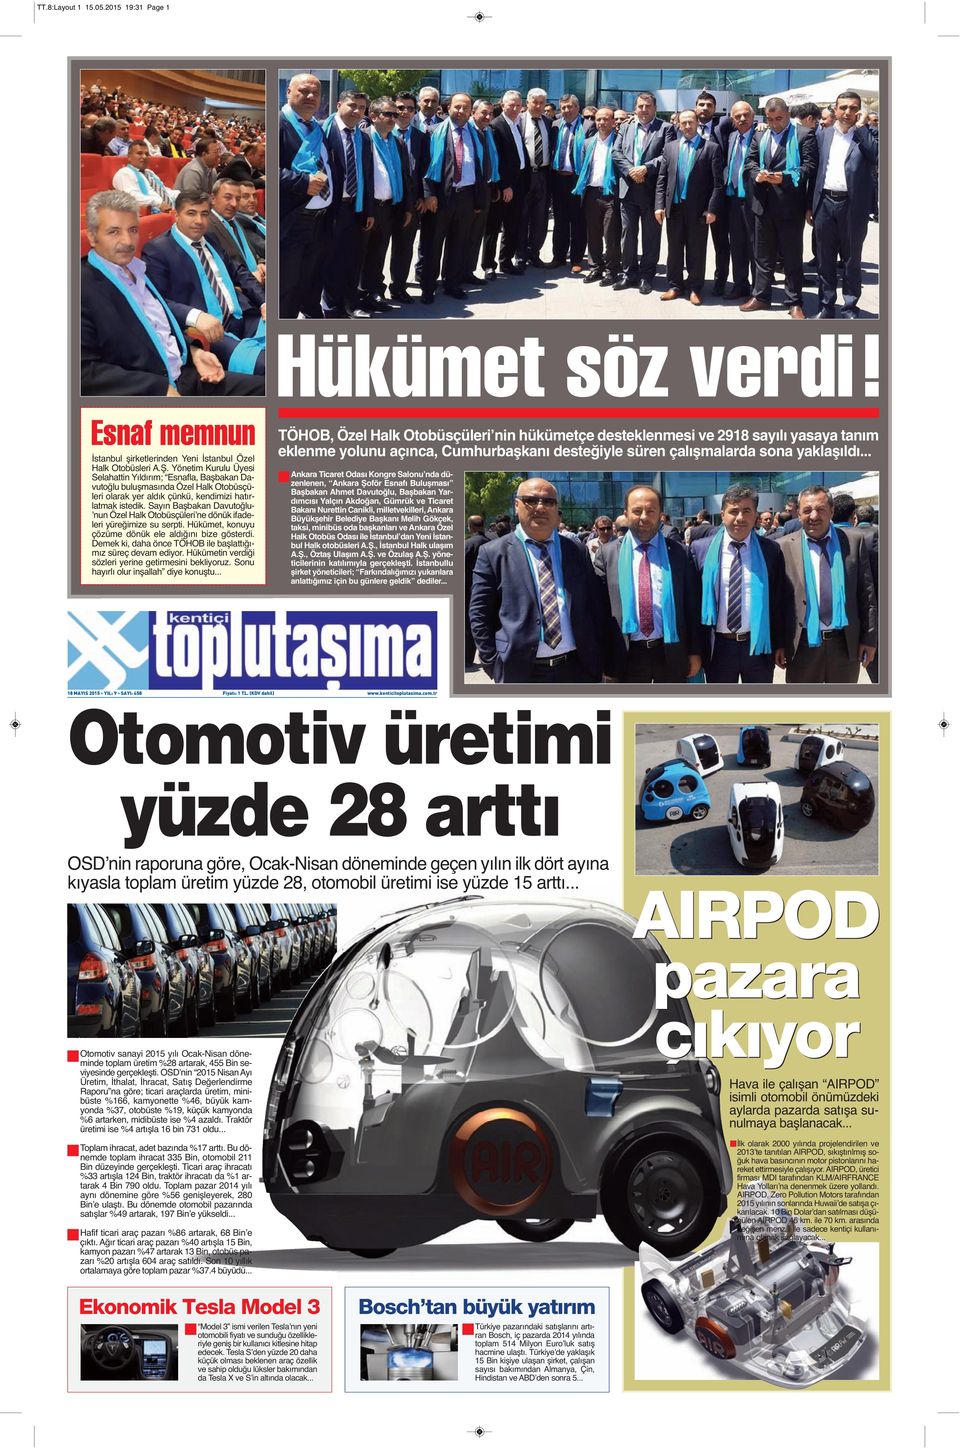 Sayın Başbakan Davutoğlu- ʼnun Özel Halk Otobüsçüleriʼne dönük ifadeleri yüreğimize su serpti. Hükümet, konuyu çözüme dönük ele aldığını bize gösterdi.